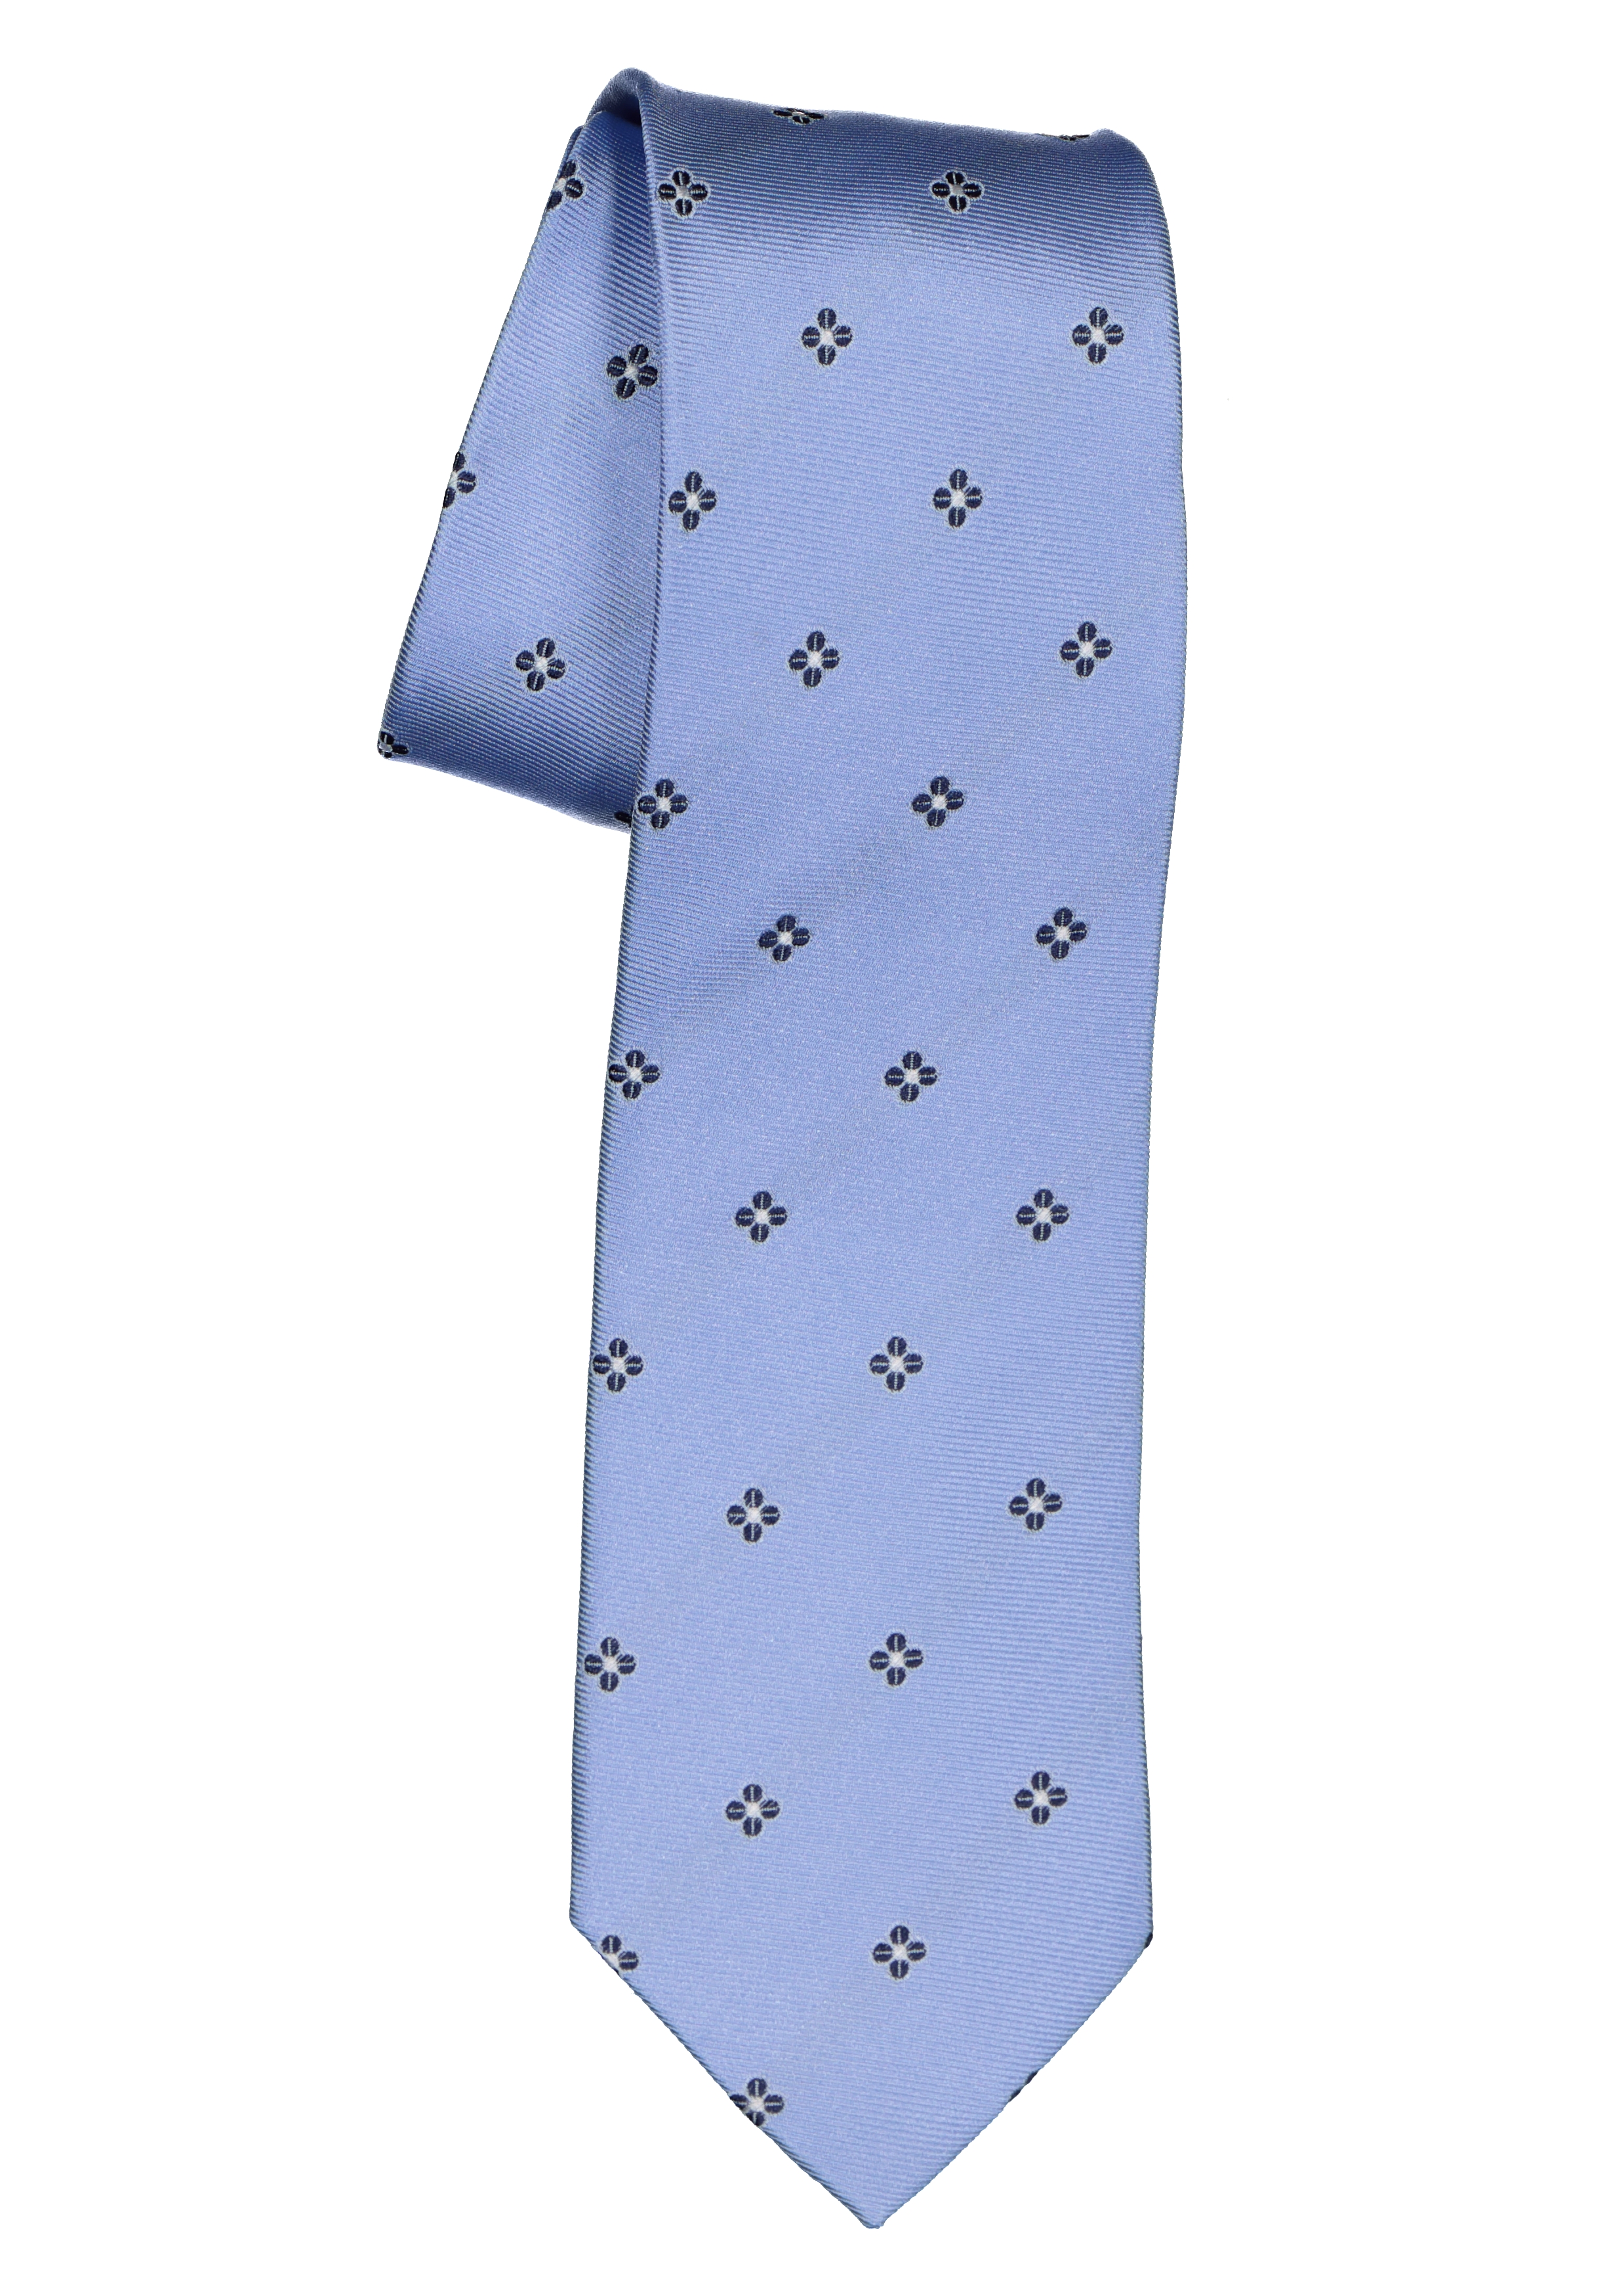 Mentaliteit Bloeien Matroos Michaelis stropdas, zijde, lichtblauw met donkerblauw en wit dessin - Shop  de nieuwste voorjaarsmode